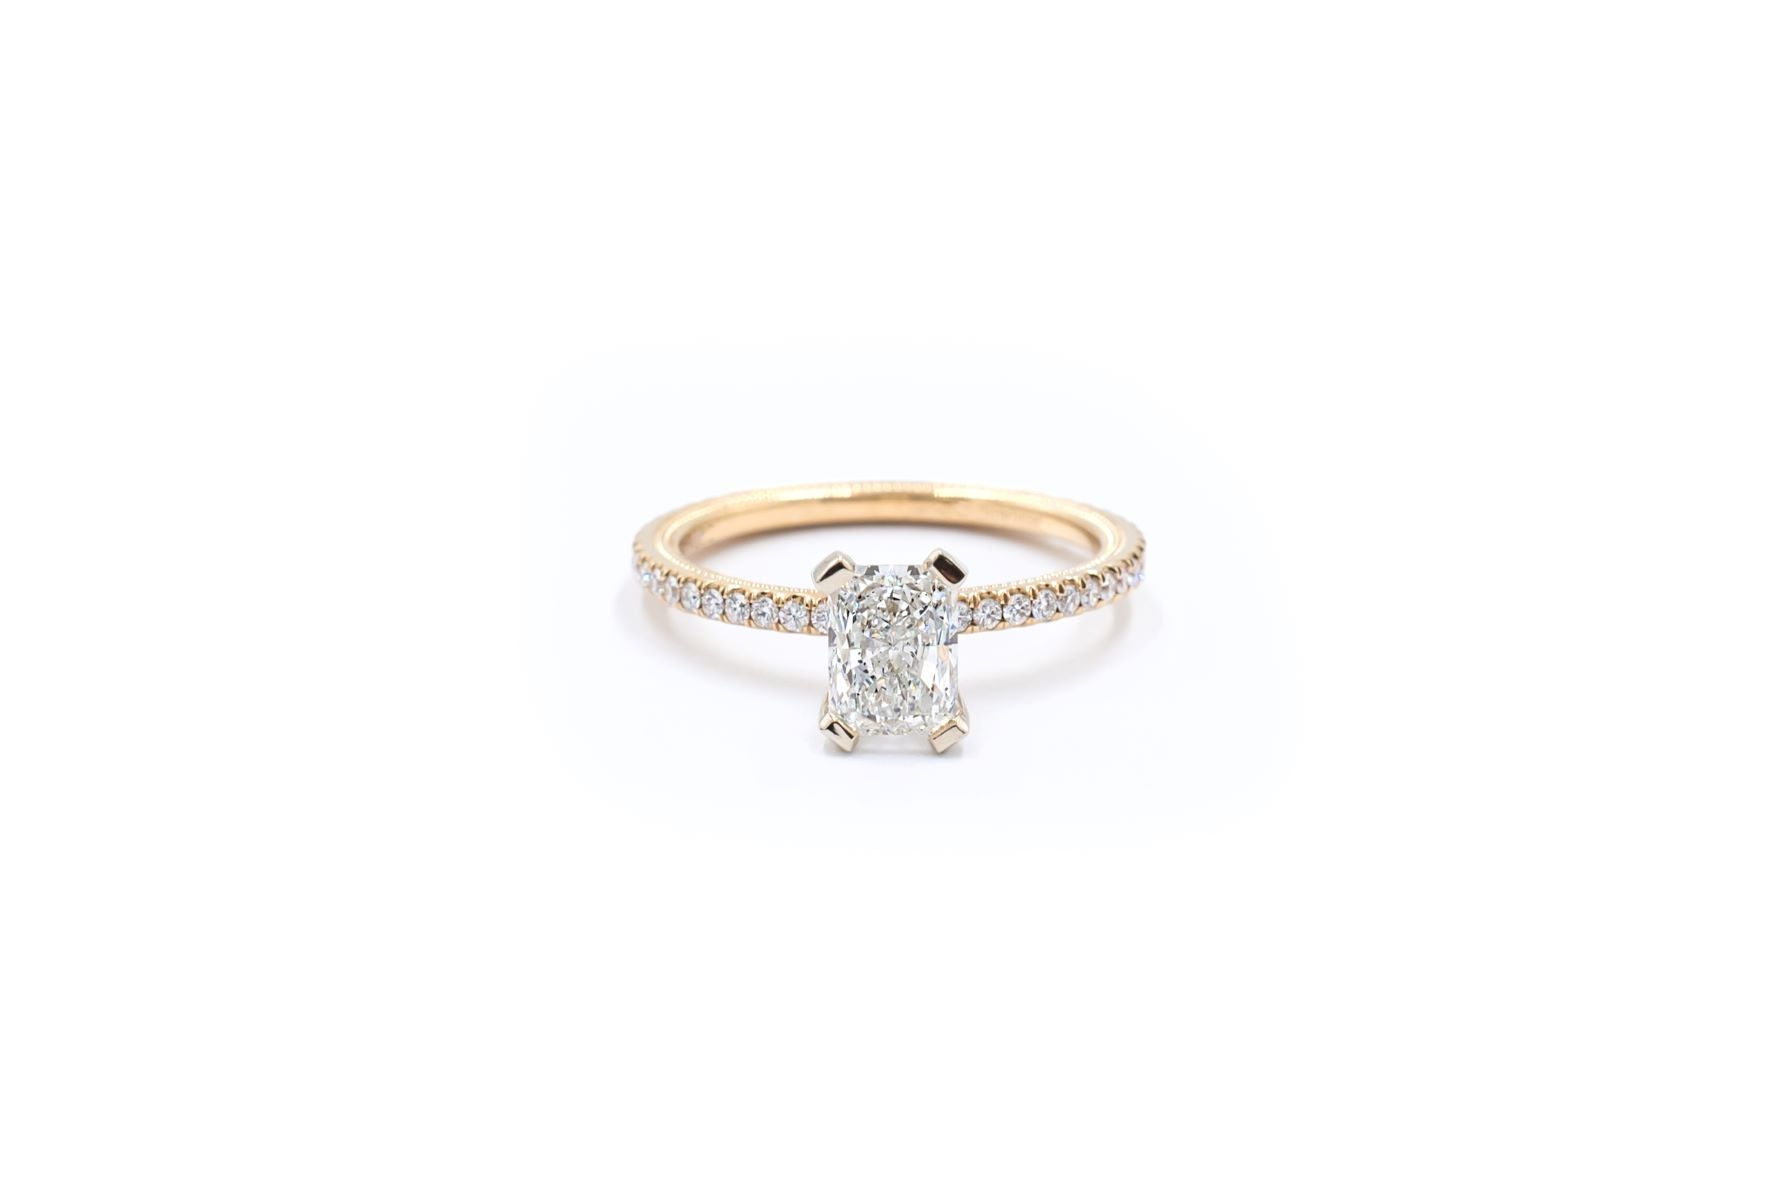 Verragio 1.30 ctw Radiant Cut Diamond Engagement Ring GIA